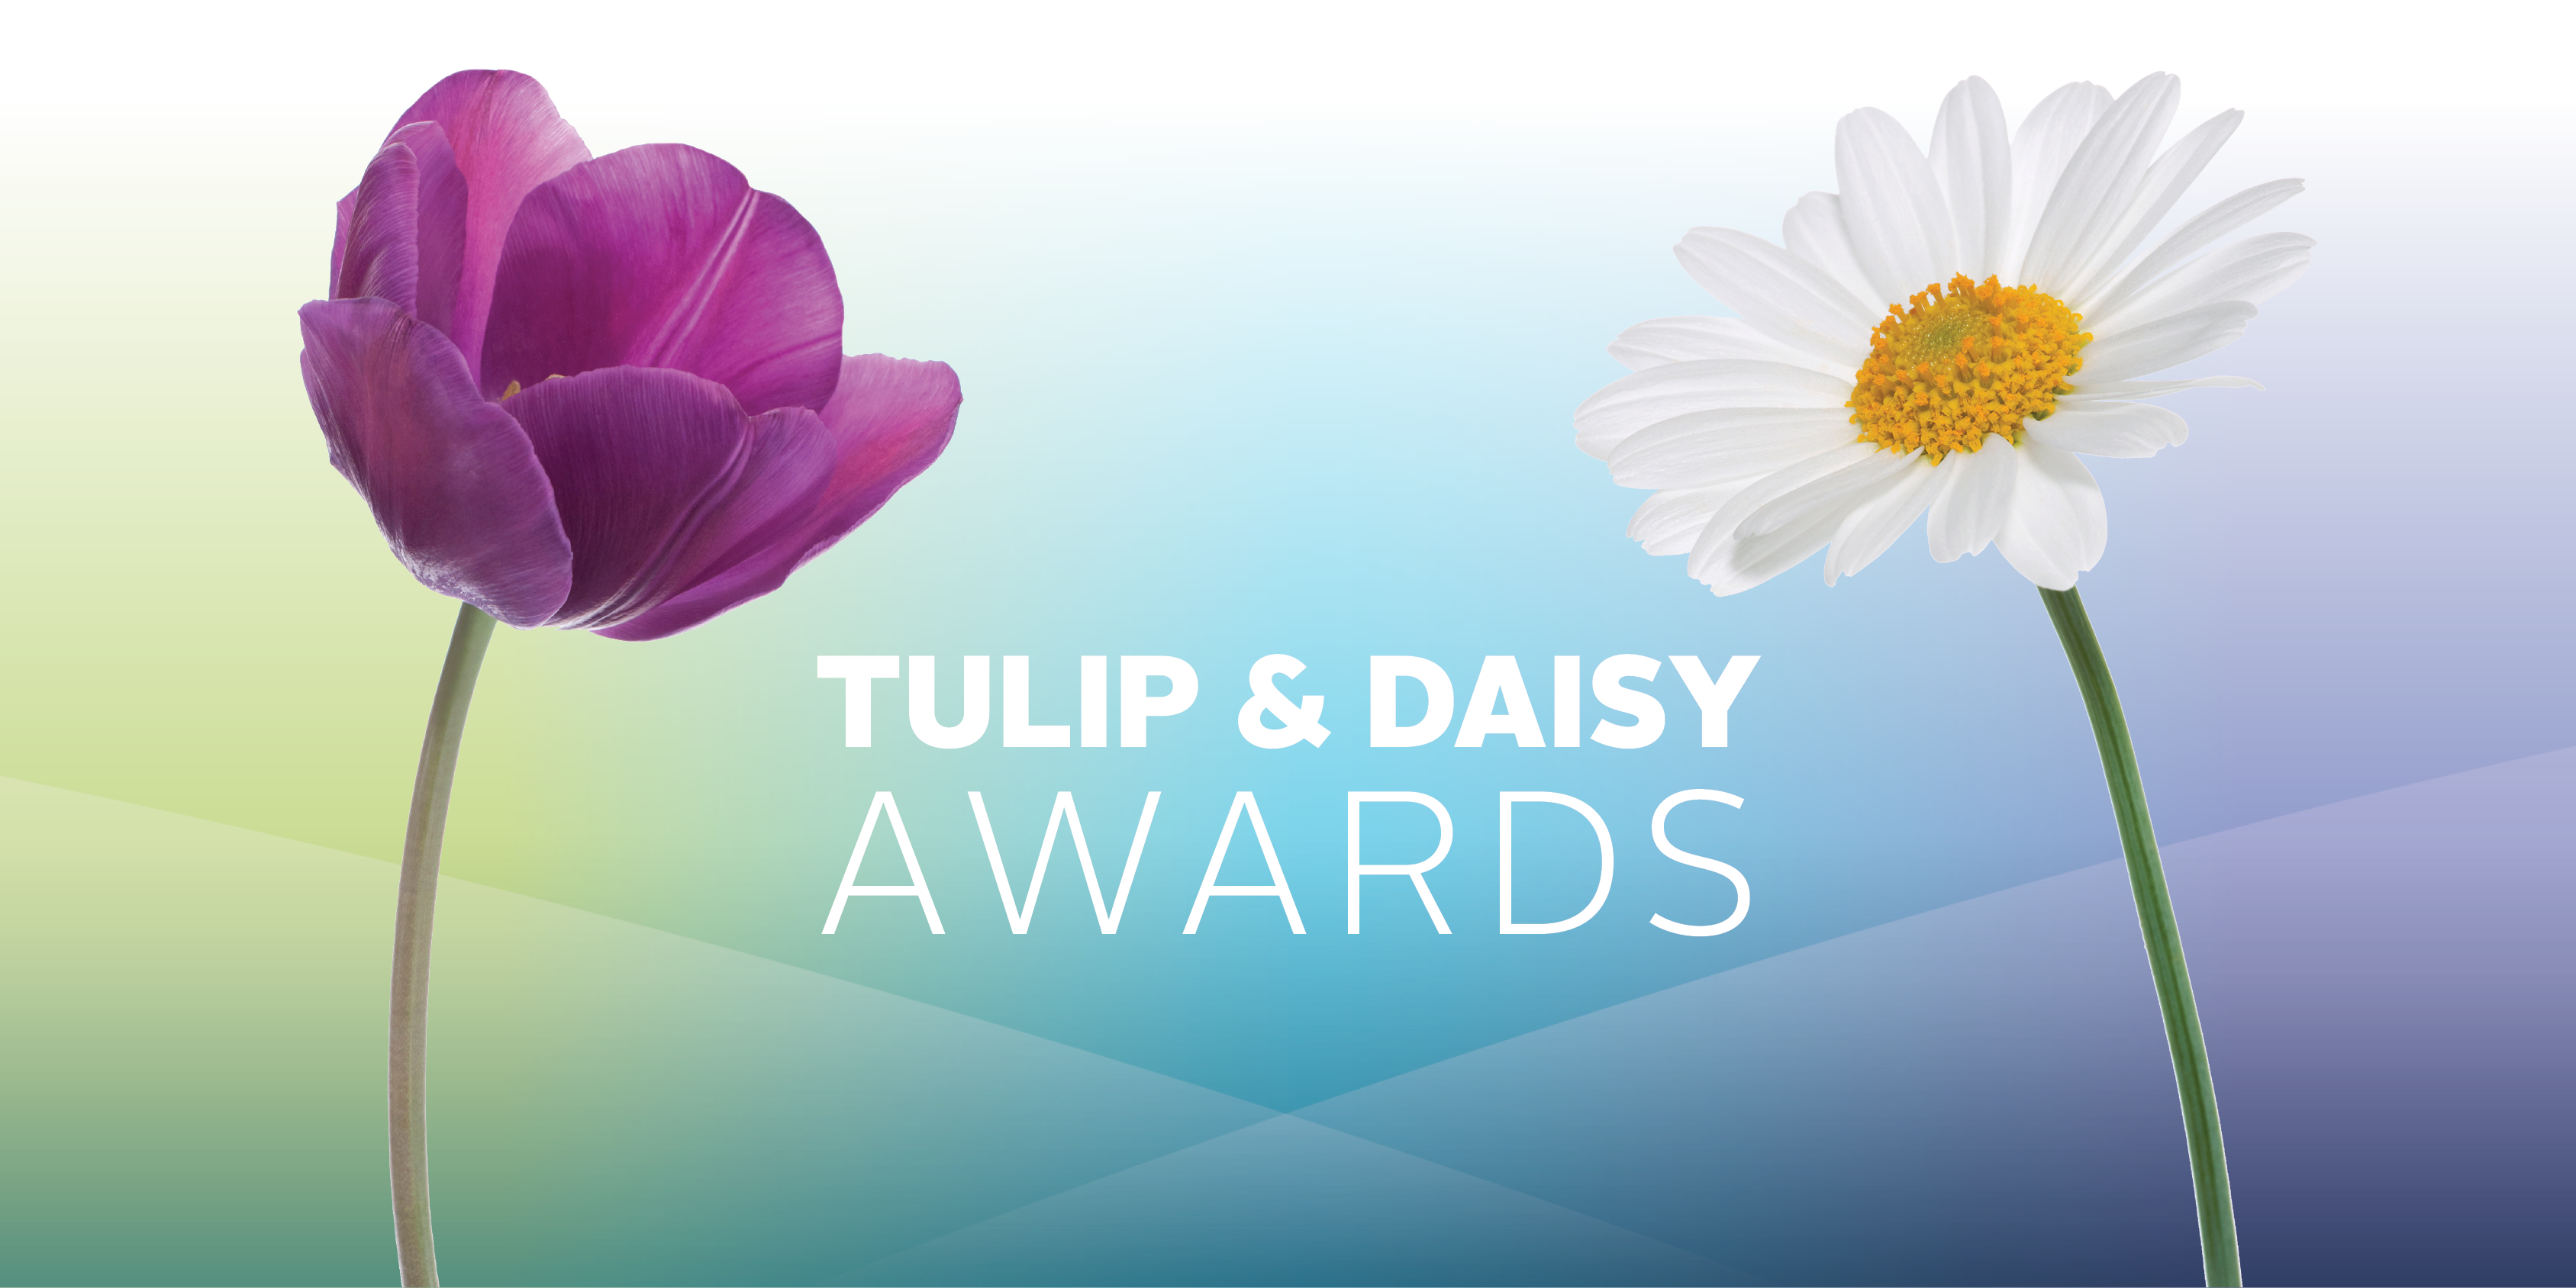 Tulip & Daisy Awards